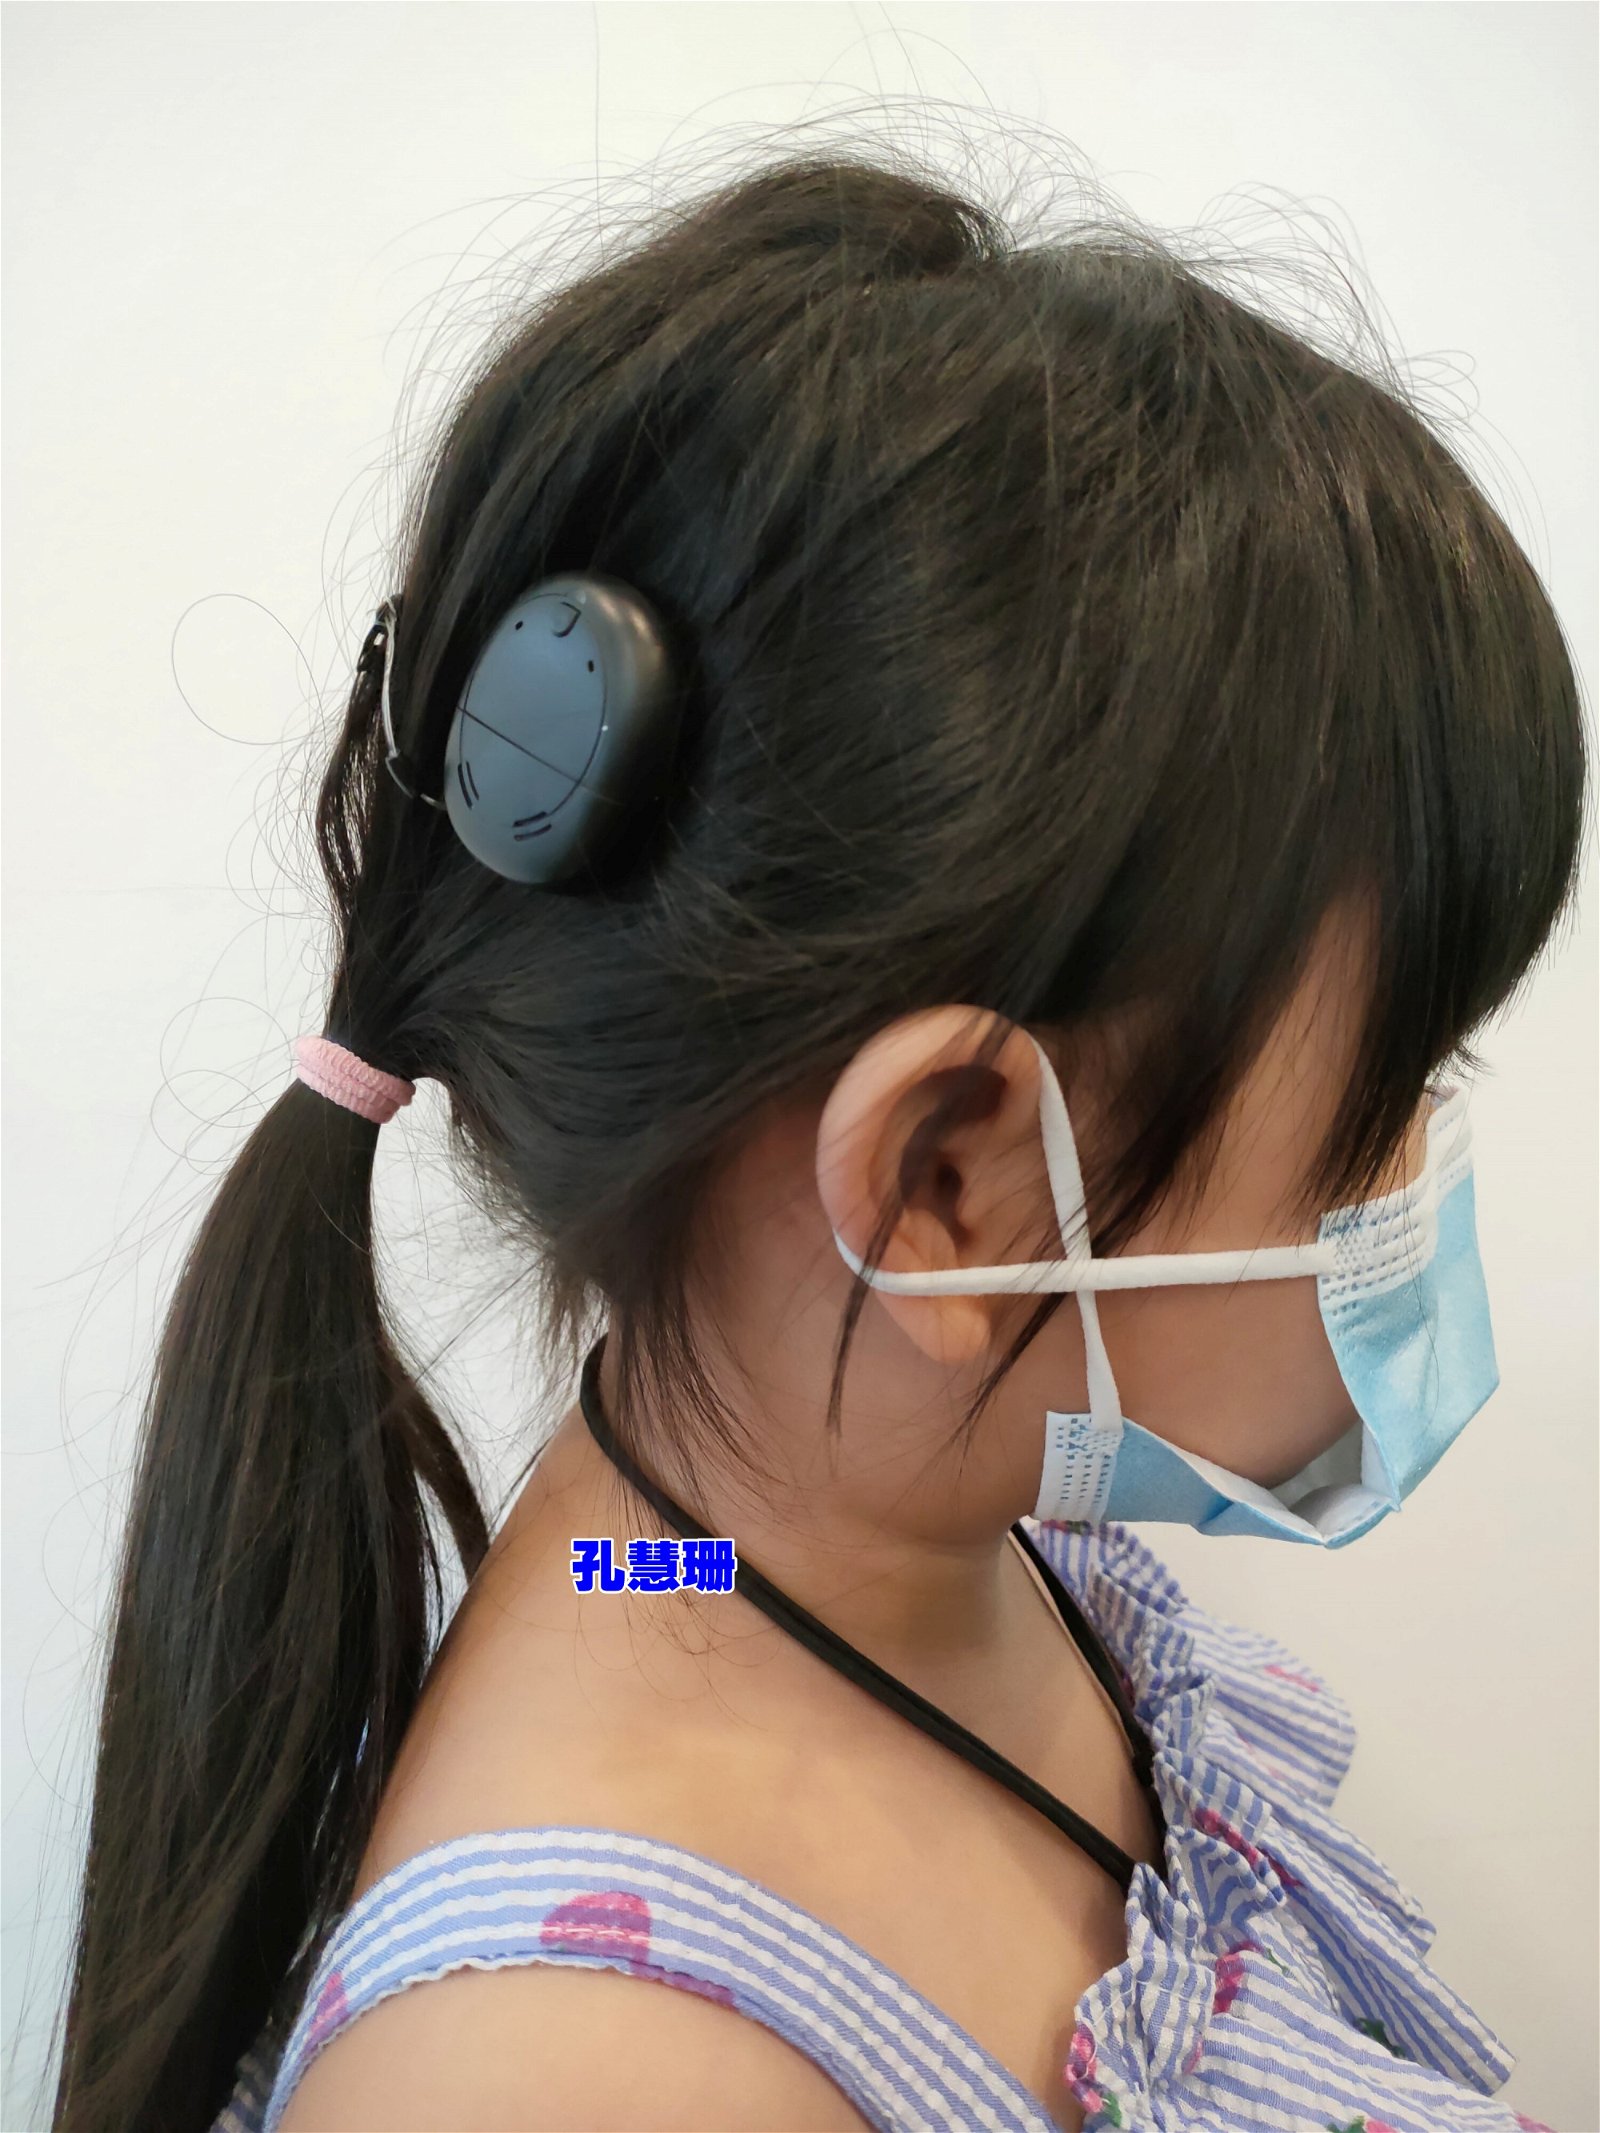 张嘉恩的左耳在1岁时植入人造耳蜗了，如今需要在右耳植入人造耳蜗。